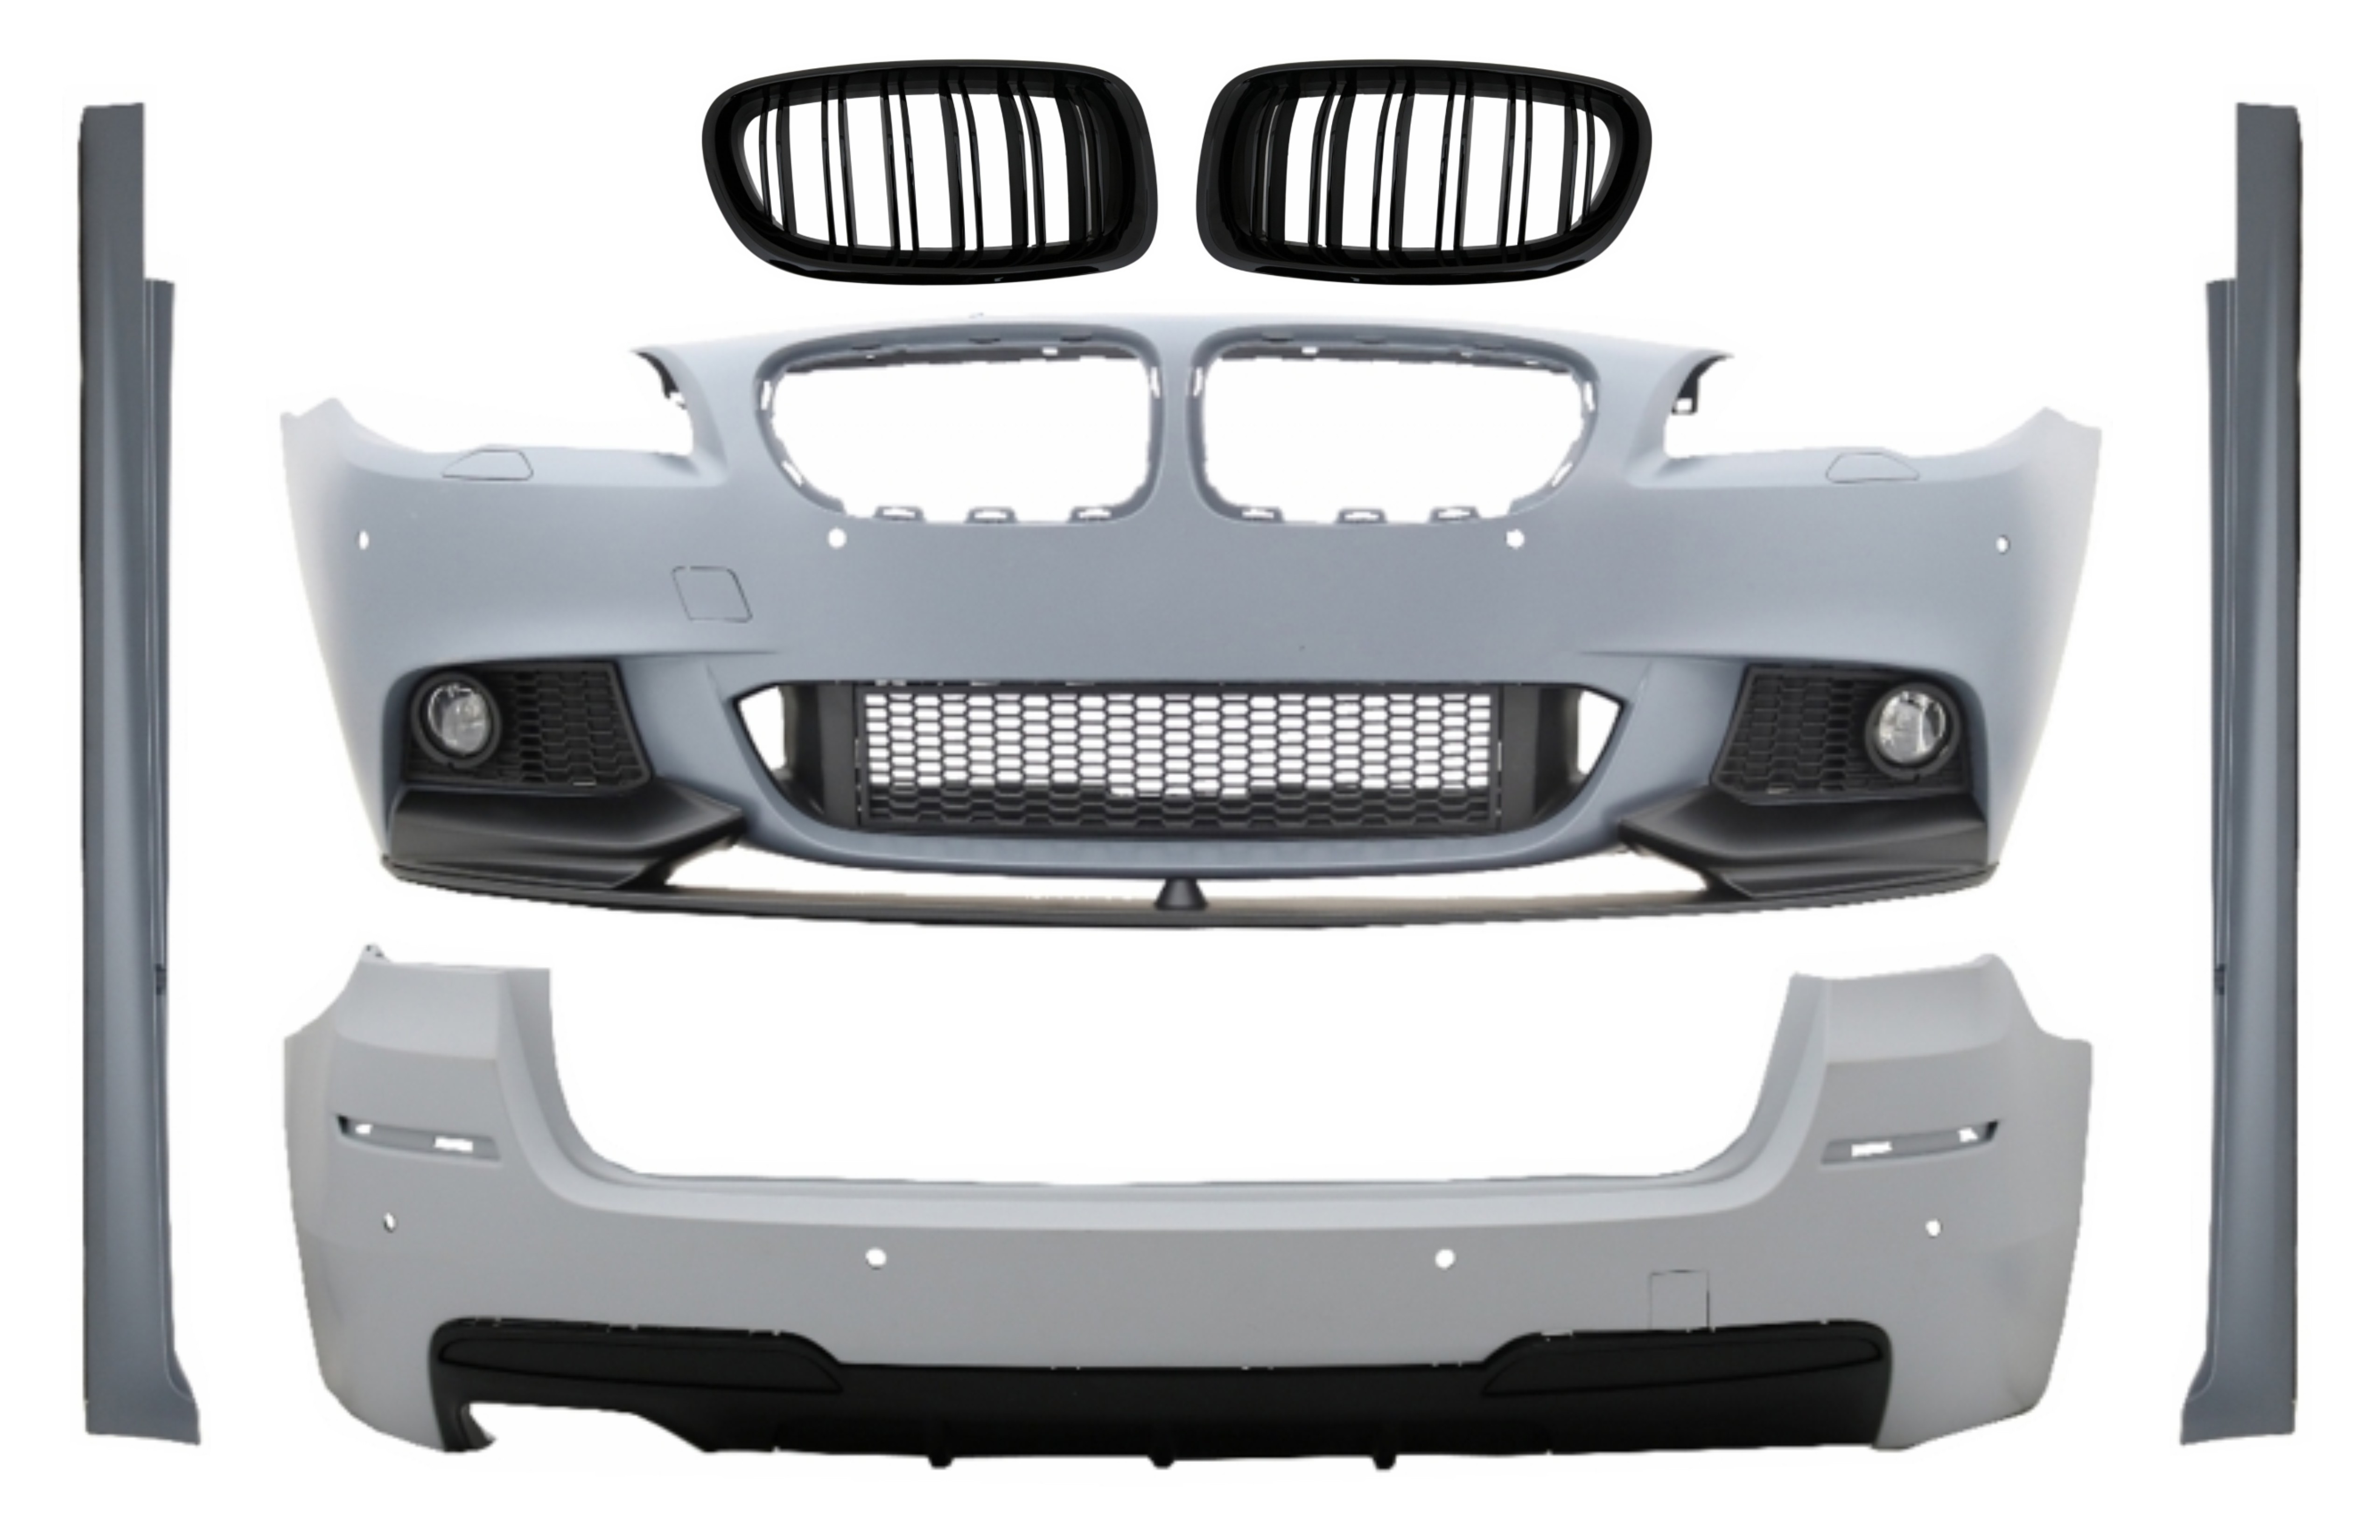 Karosszériakészlet központi rácsokkal, BMW 5-ös sorozatú F11 Touring (2011-2013) M-Performance Design számára